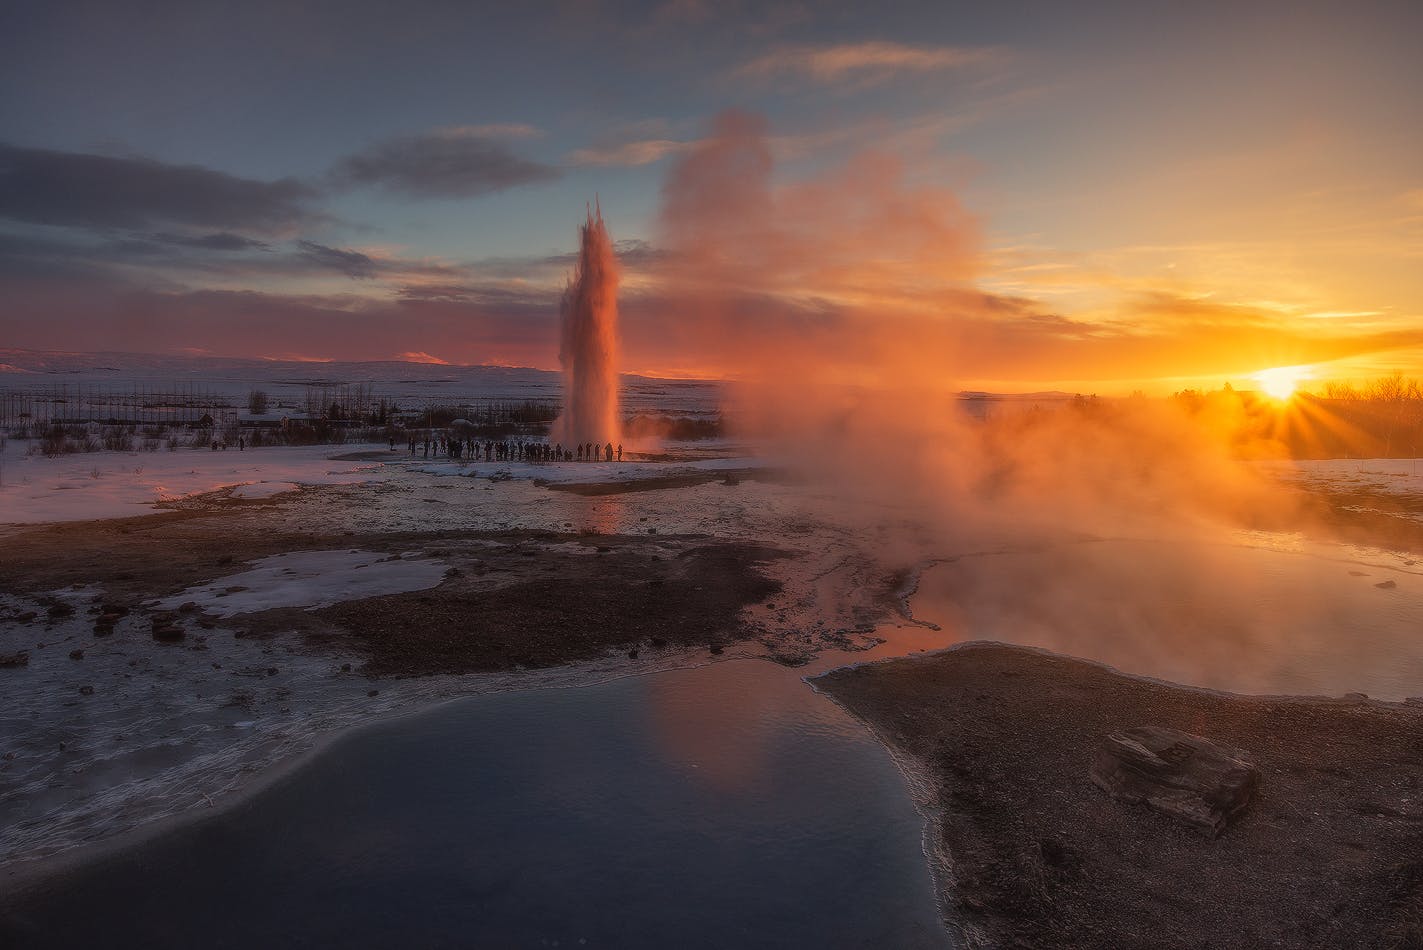 El poderoso géiser Strokkur entra en erupción rutinariamente cada cinco o diez minutos, arrojando enormes cantidades de agua en el cielo invernal de Islandia.